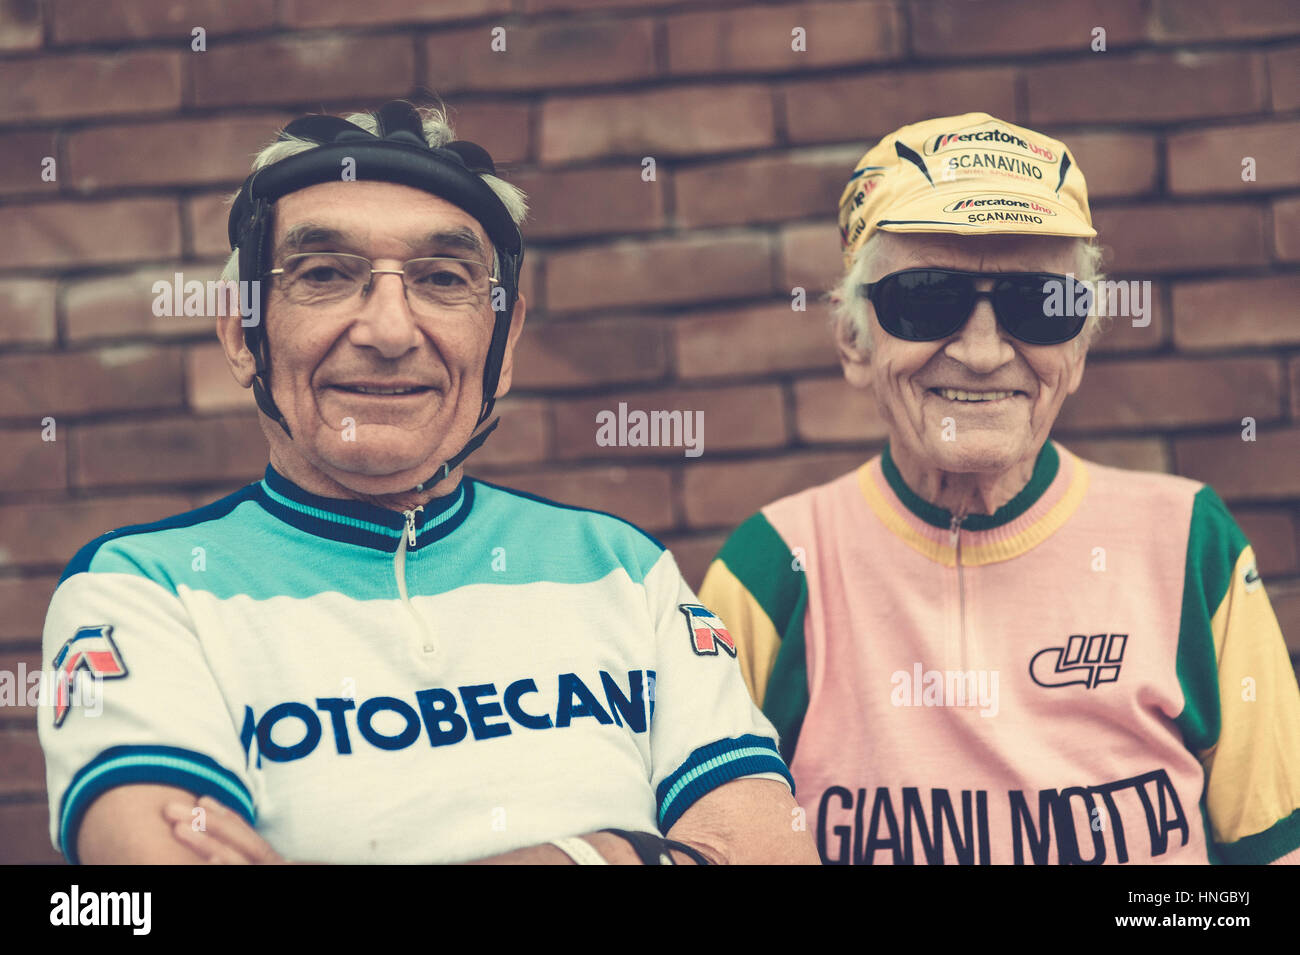 Retro Ronde of the Tour of Flanders in Oudenaarde, Belgium. Stock Photo